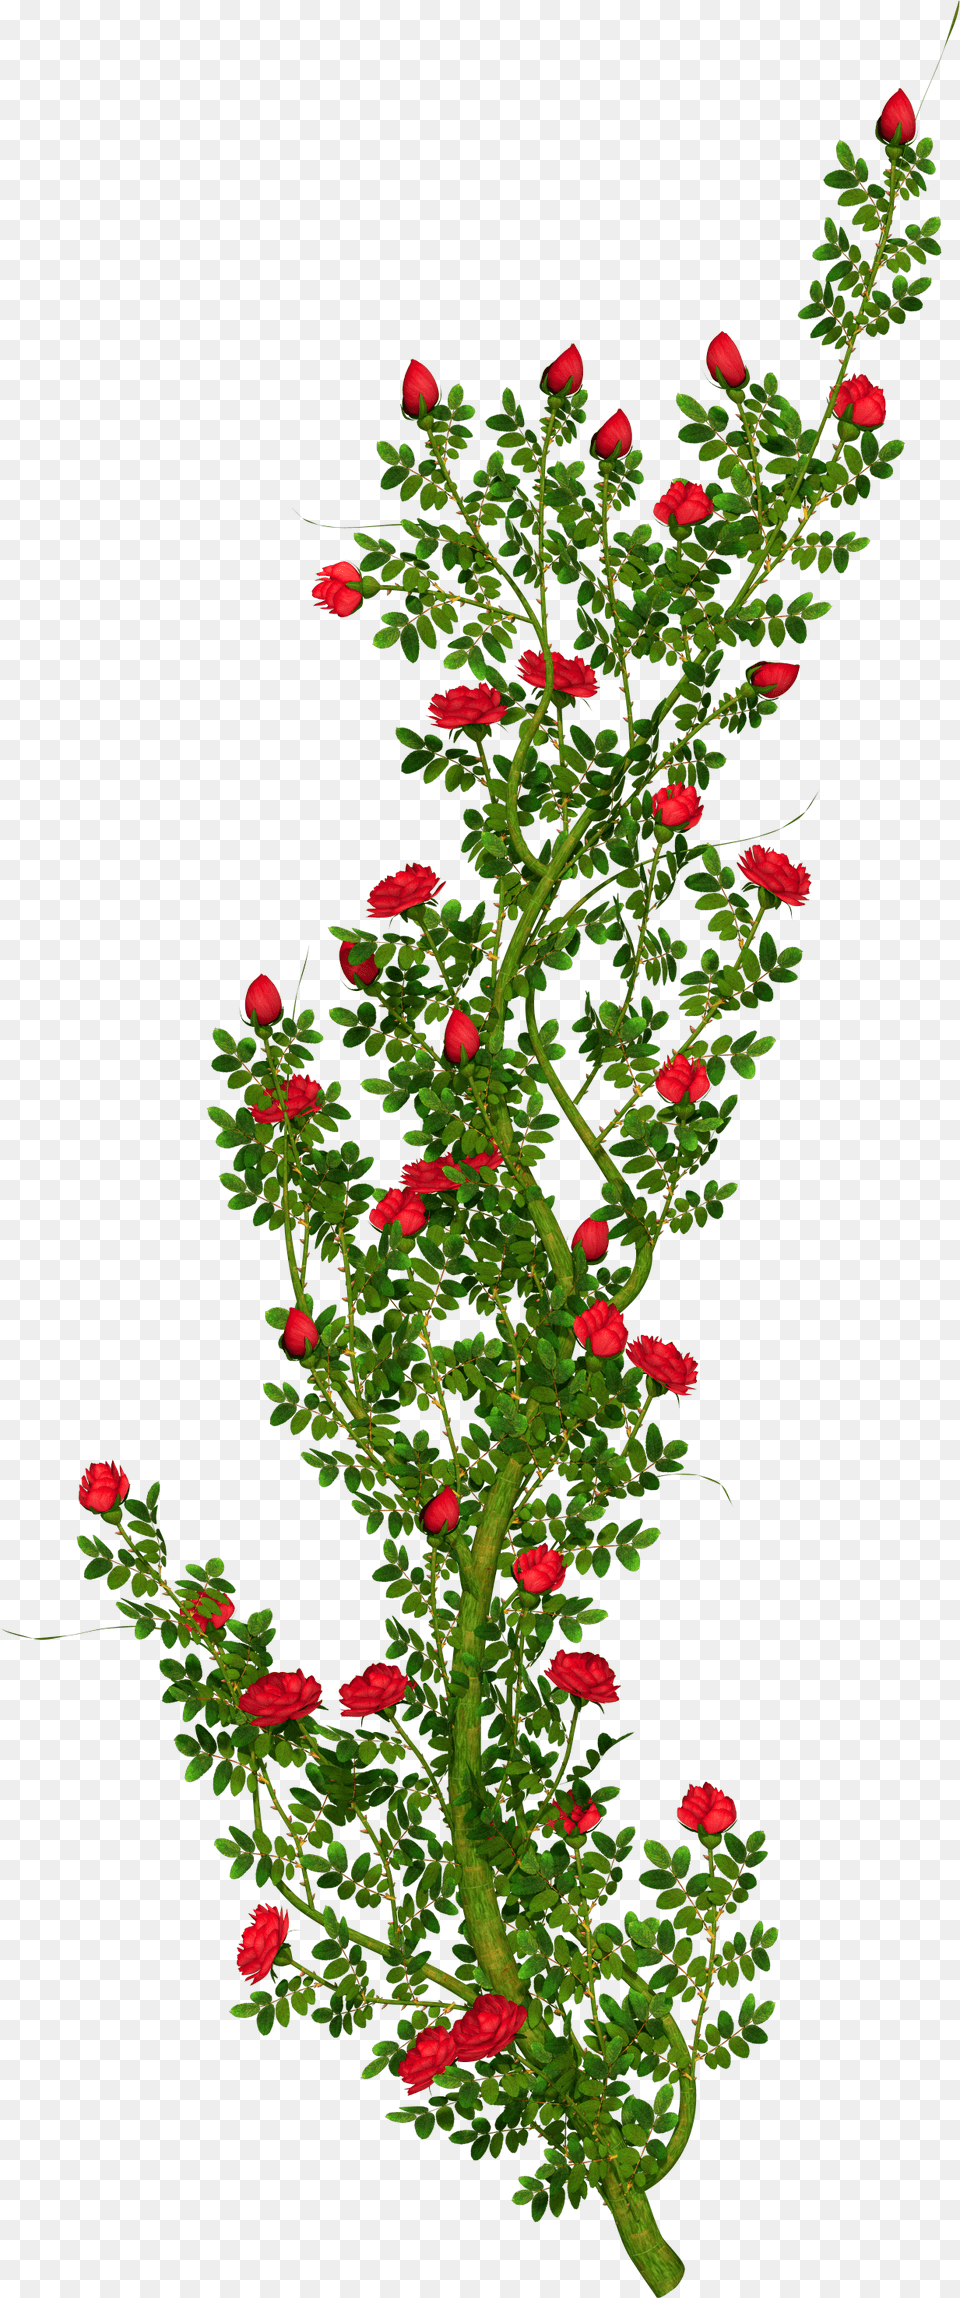 Rosebush Clipart Transparent Rose Tree, Flower, Flower Arrangement, Geranium, Plant Png